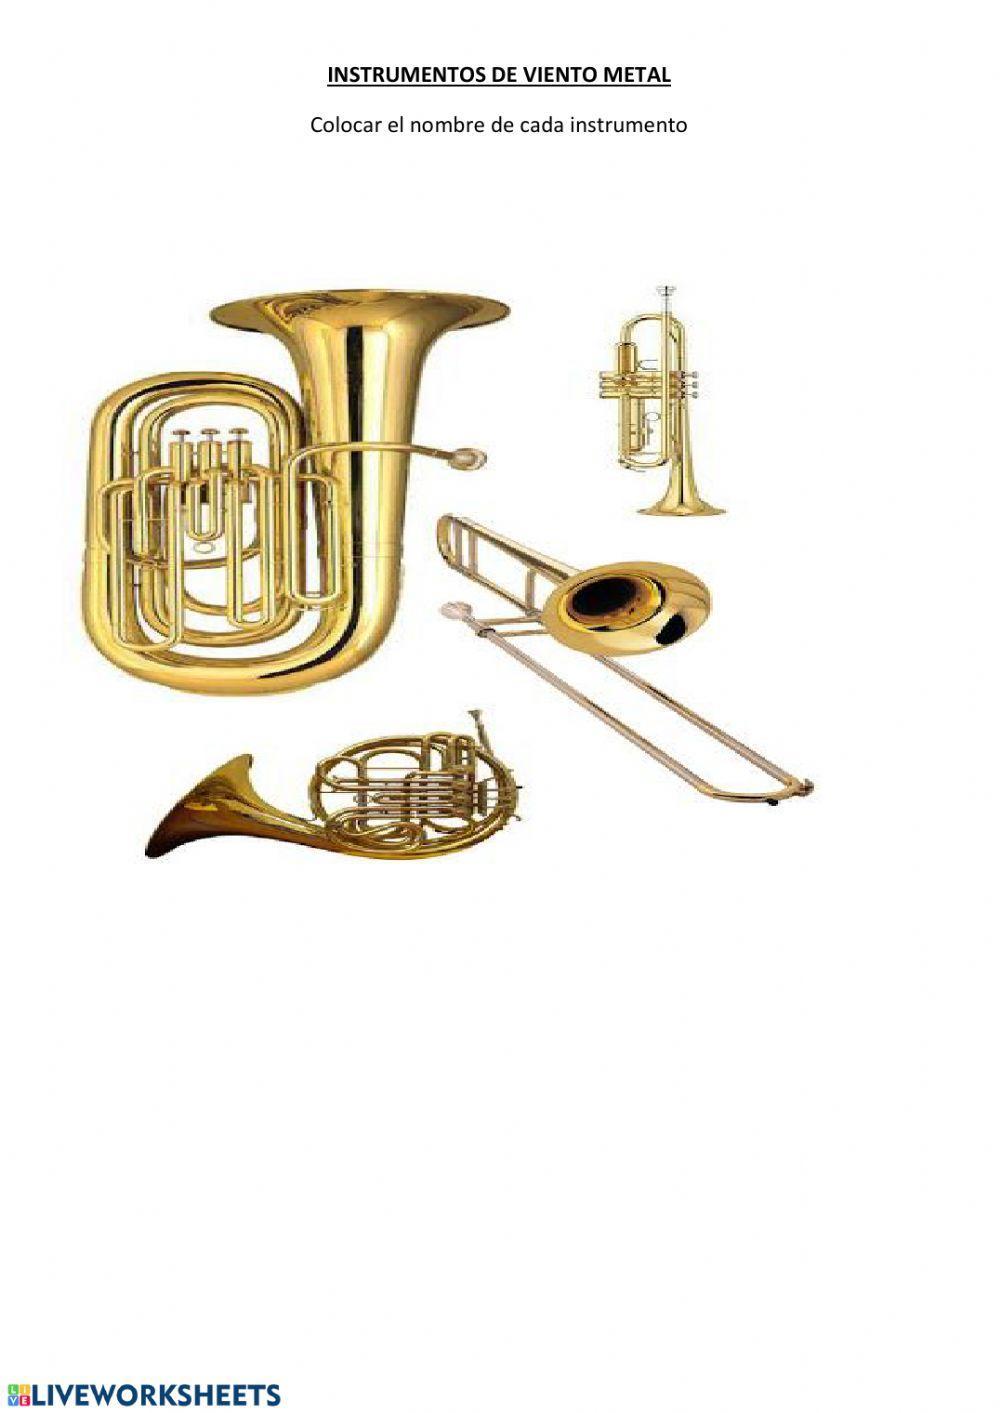 Orquesta sinfónica: instrumentos de viento metal